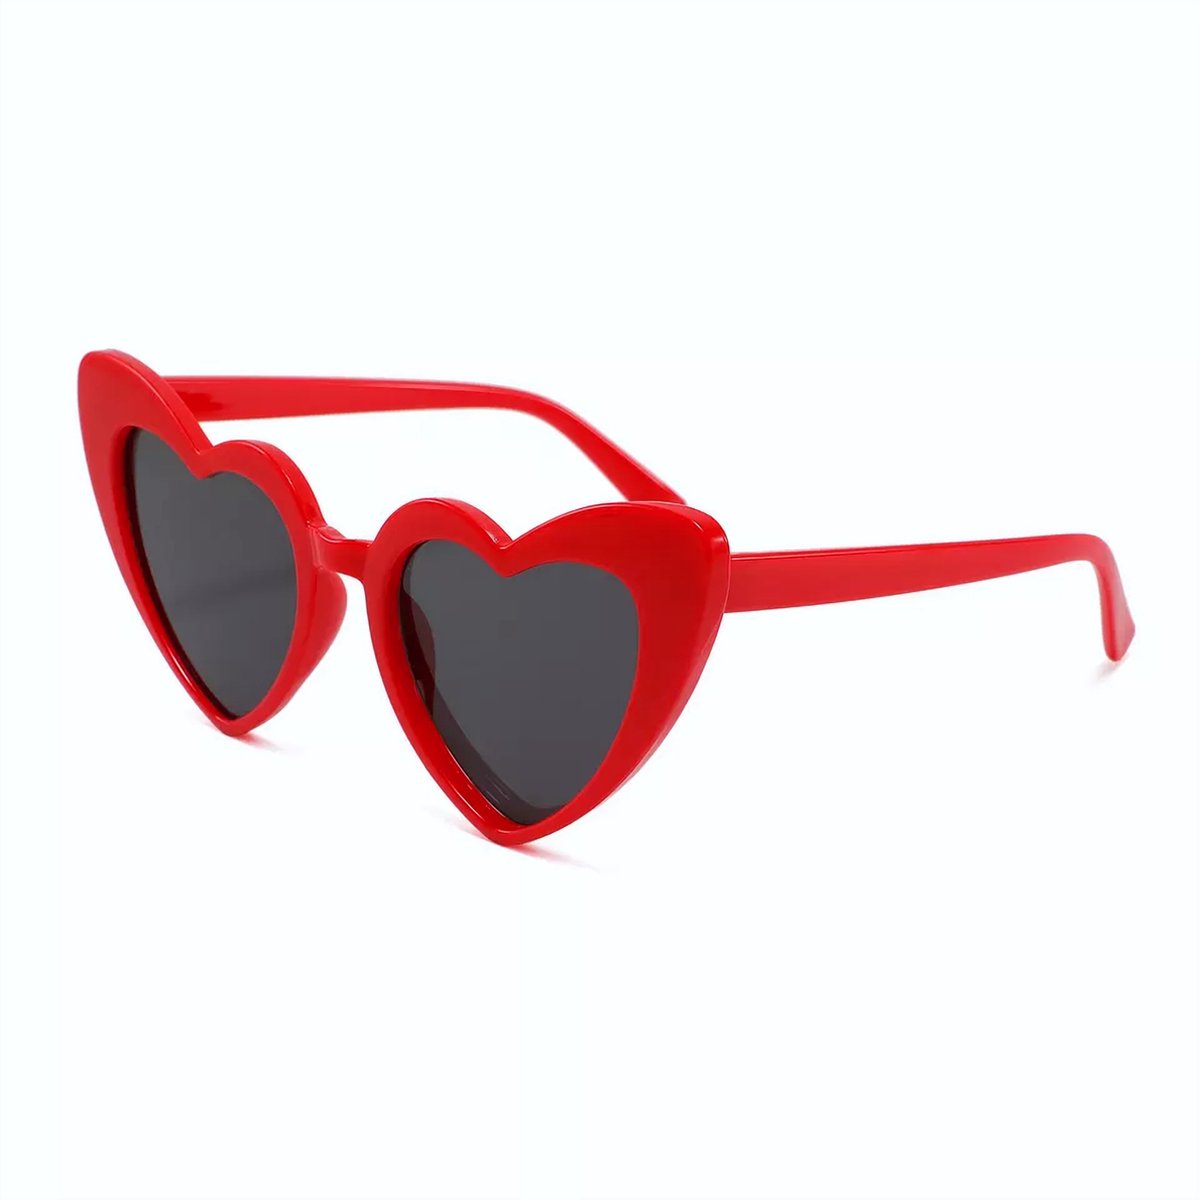 DAEBAK Rode vrouwen zonnebril in hart vorm [Rood] met hartjes zonnebrillen Dames Festival Sunglasses